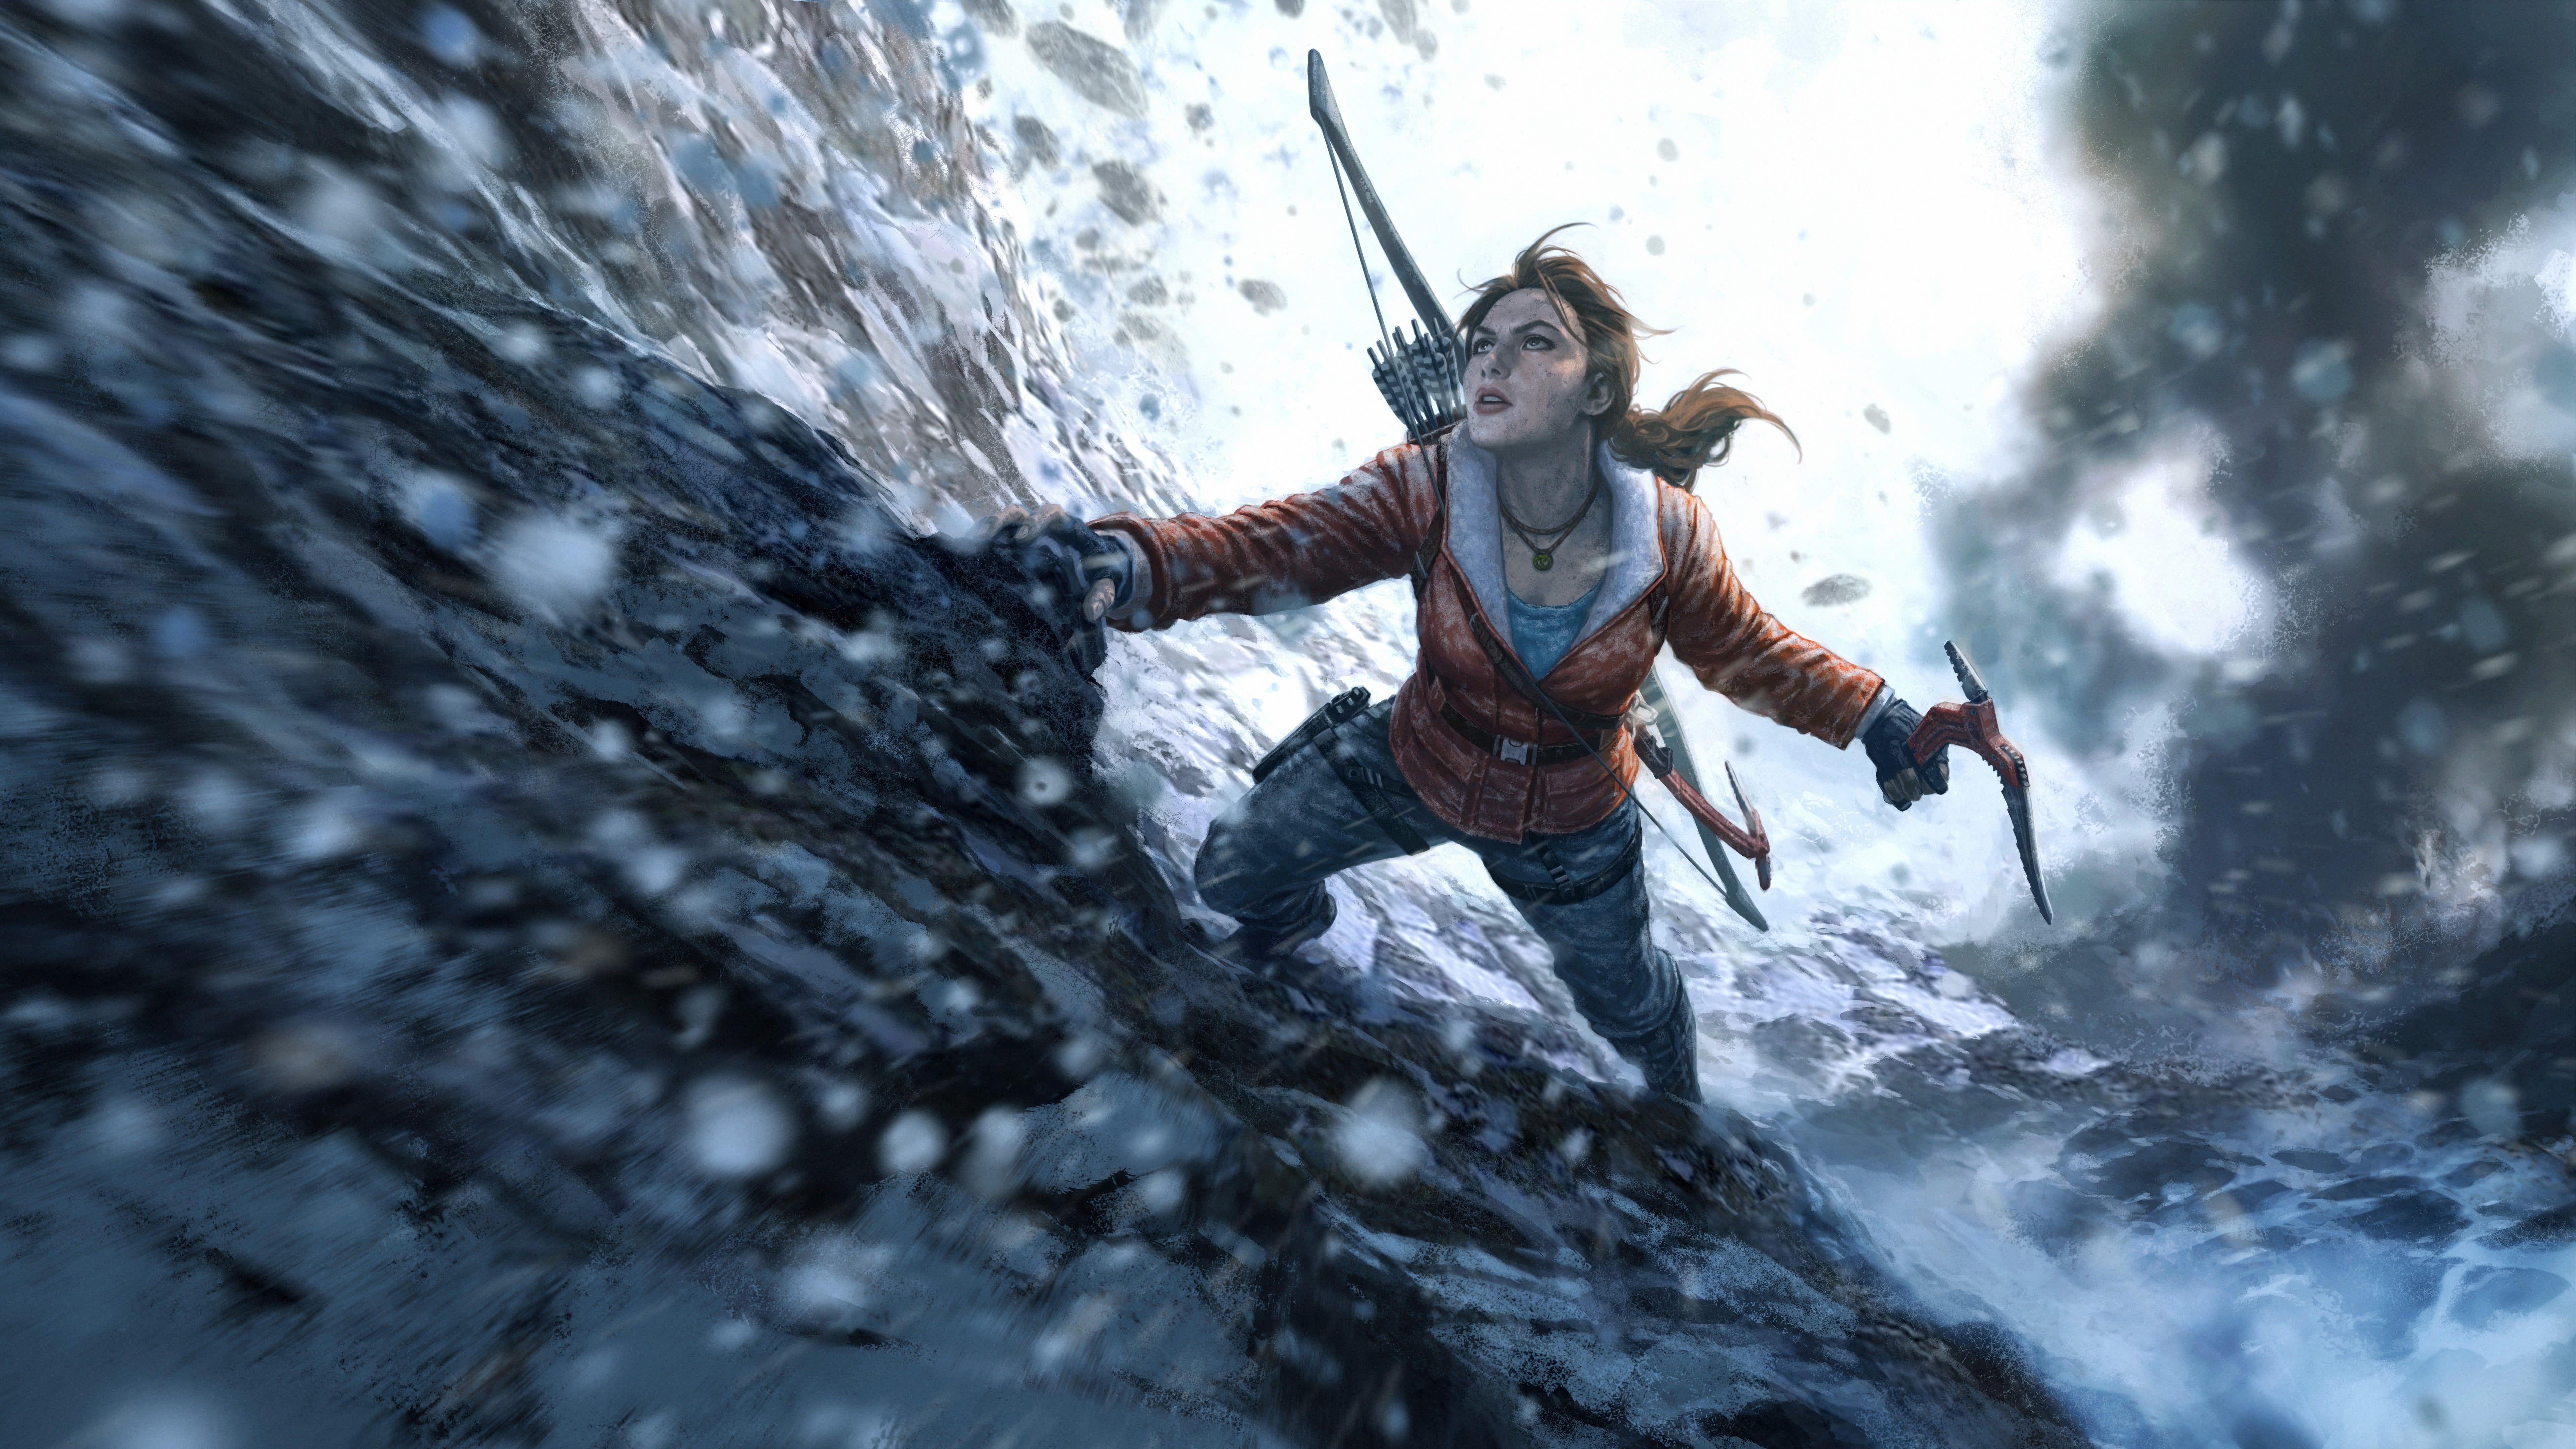 Hình nền 7680x4320 Rise of the Tomb Raider UHD 8K